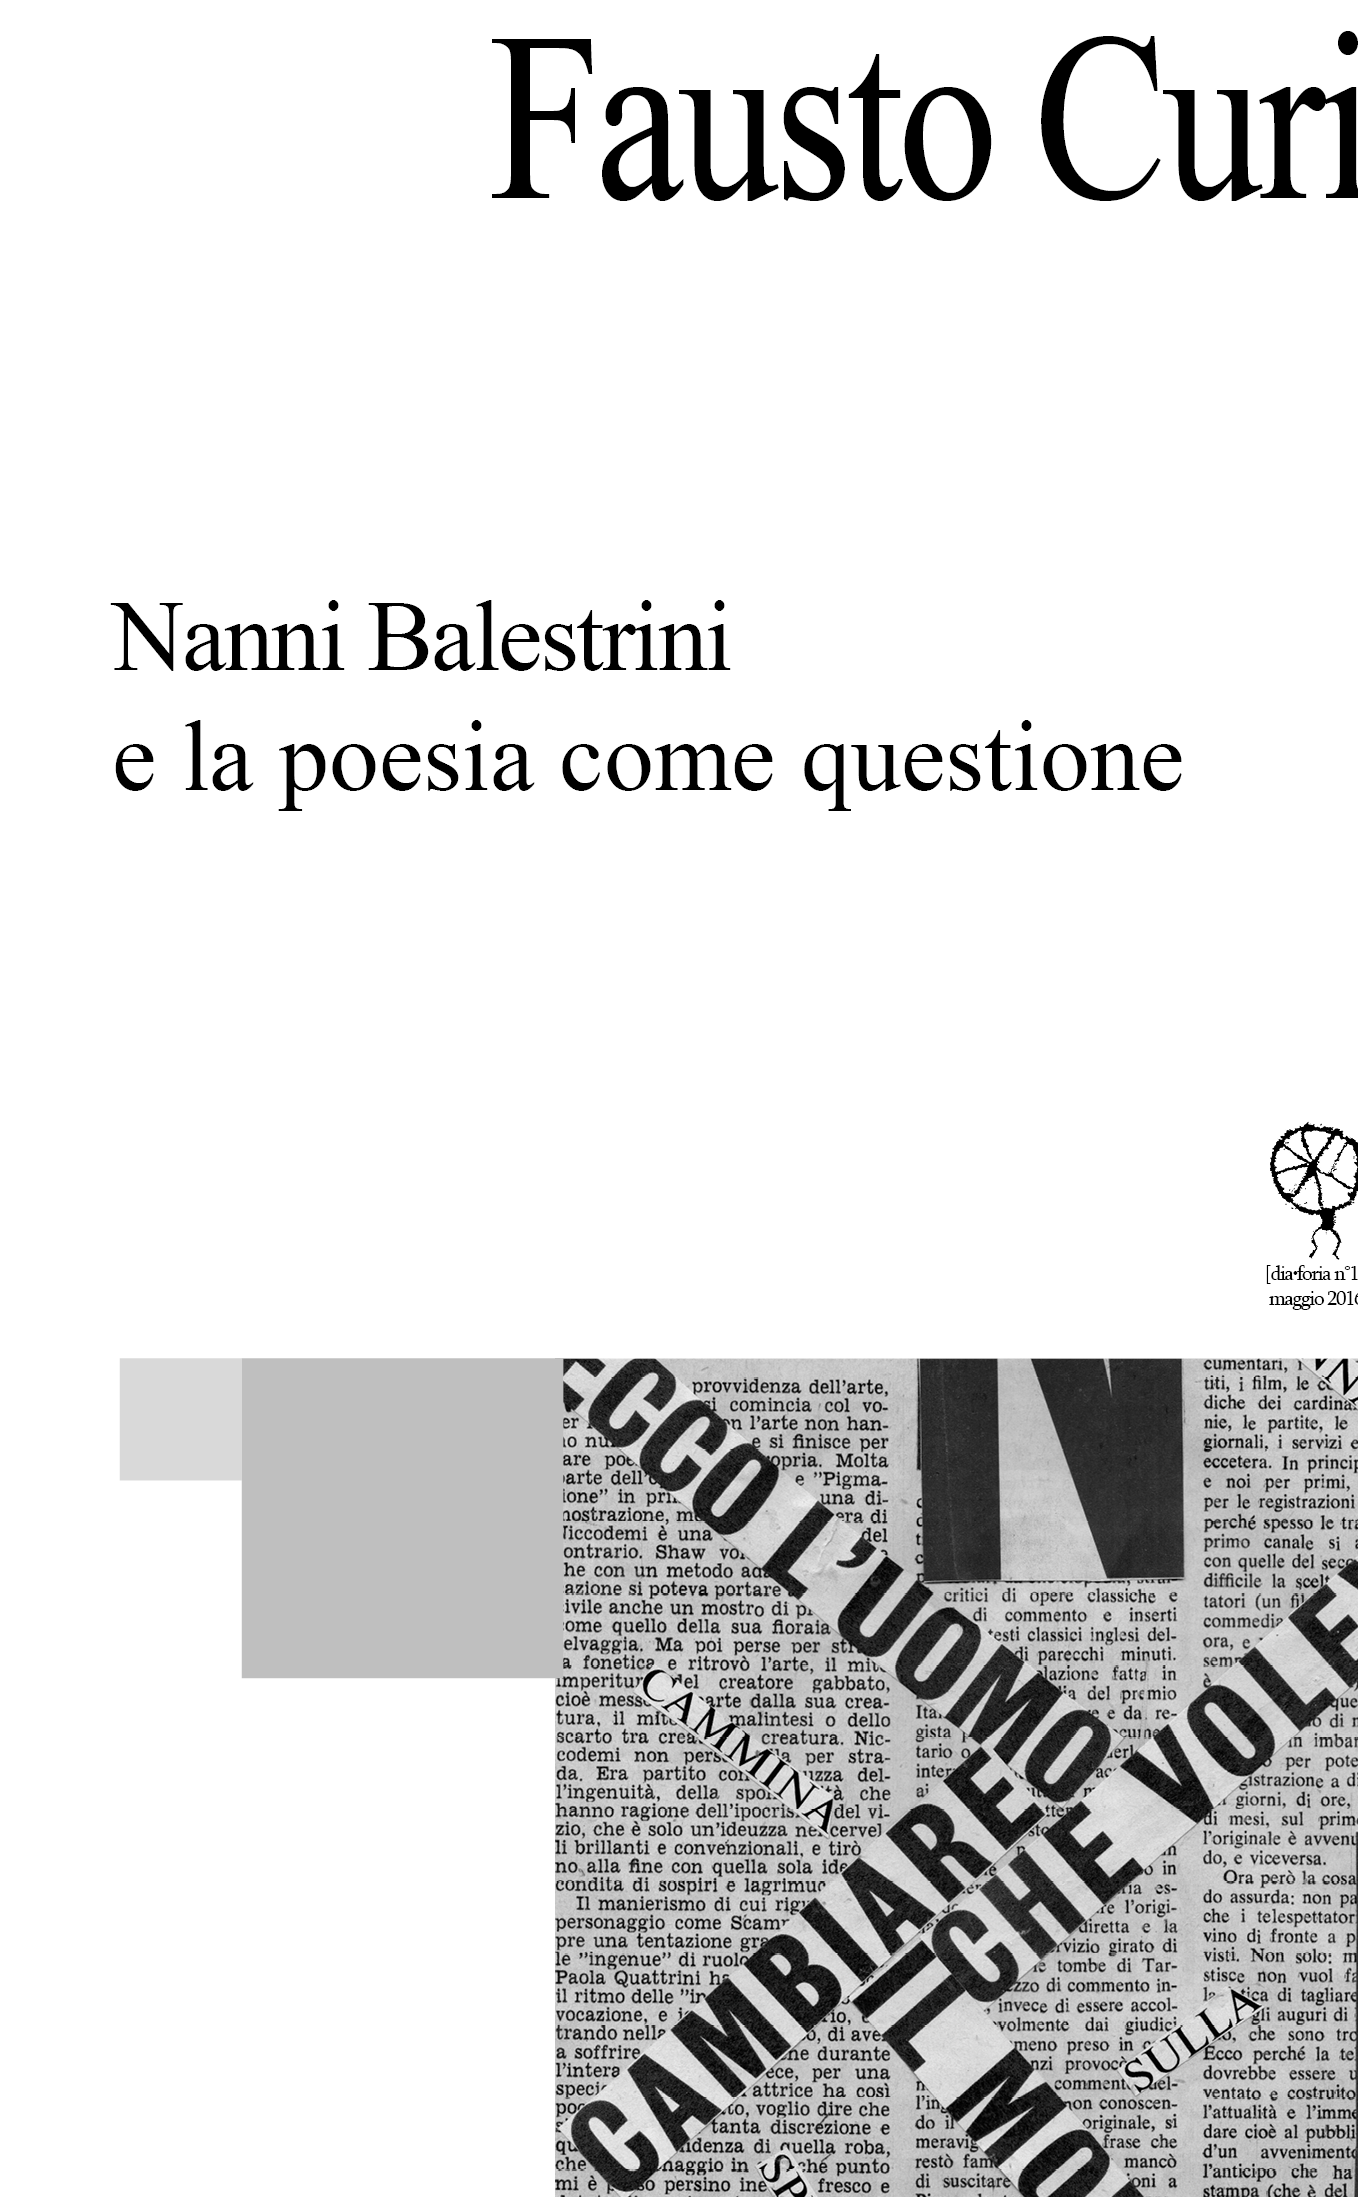 016 Fausto Curi - Nanni Balestrini e la poesia come questione